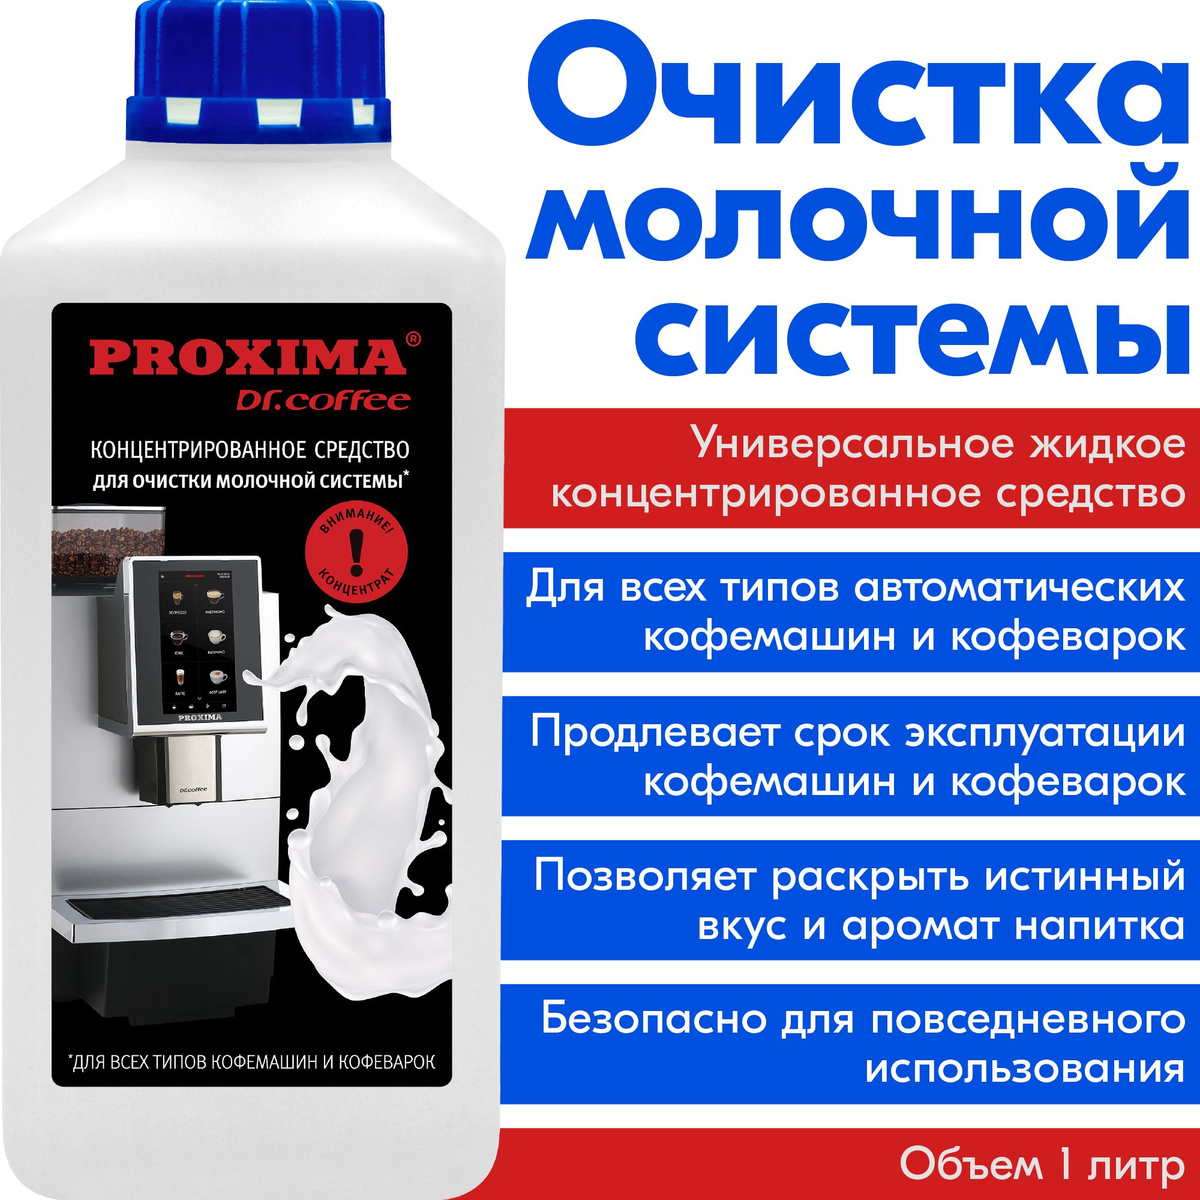 https://www.ozon.ru/product/sredstvo-ochistki-molochnoy-sistemy-kofemashin-universalnoe-proxima-m11-1-l-kontsentrat-167057906/